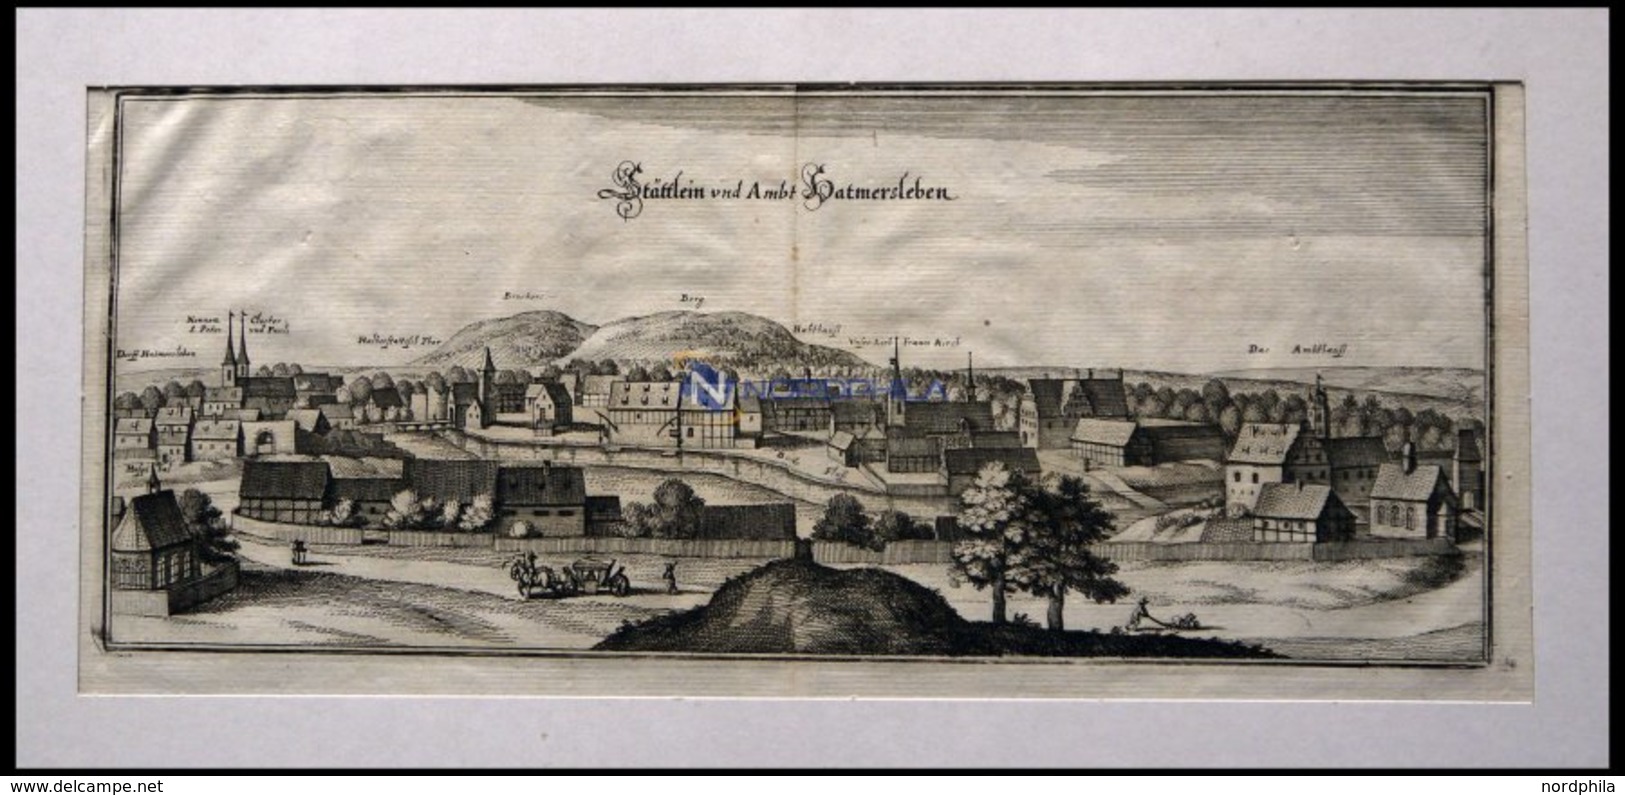 HATMERSLEBEN, Gesamtansicht, Kupferstich Von Merian Um 1645 - Lithographies